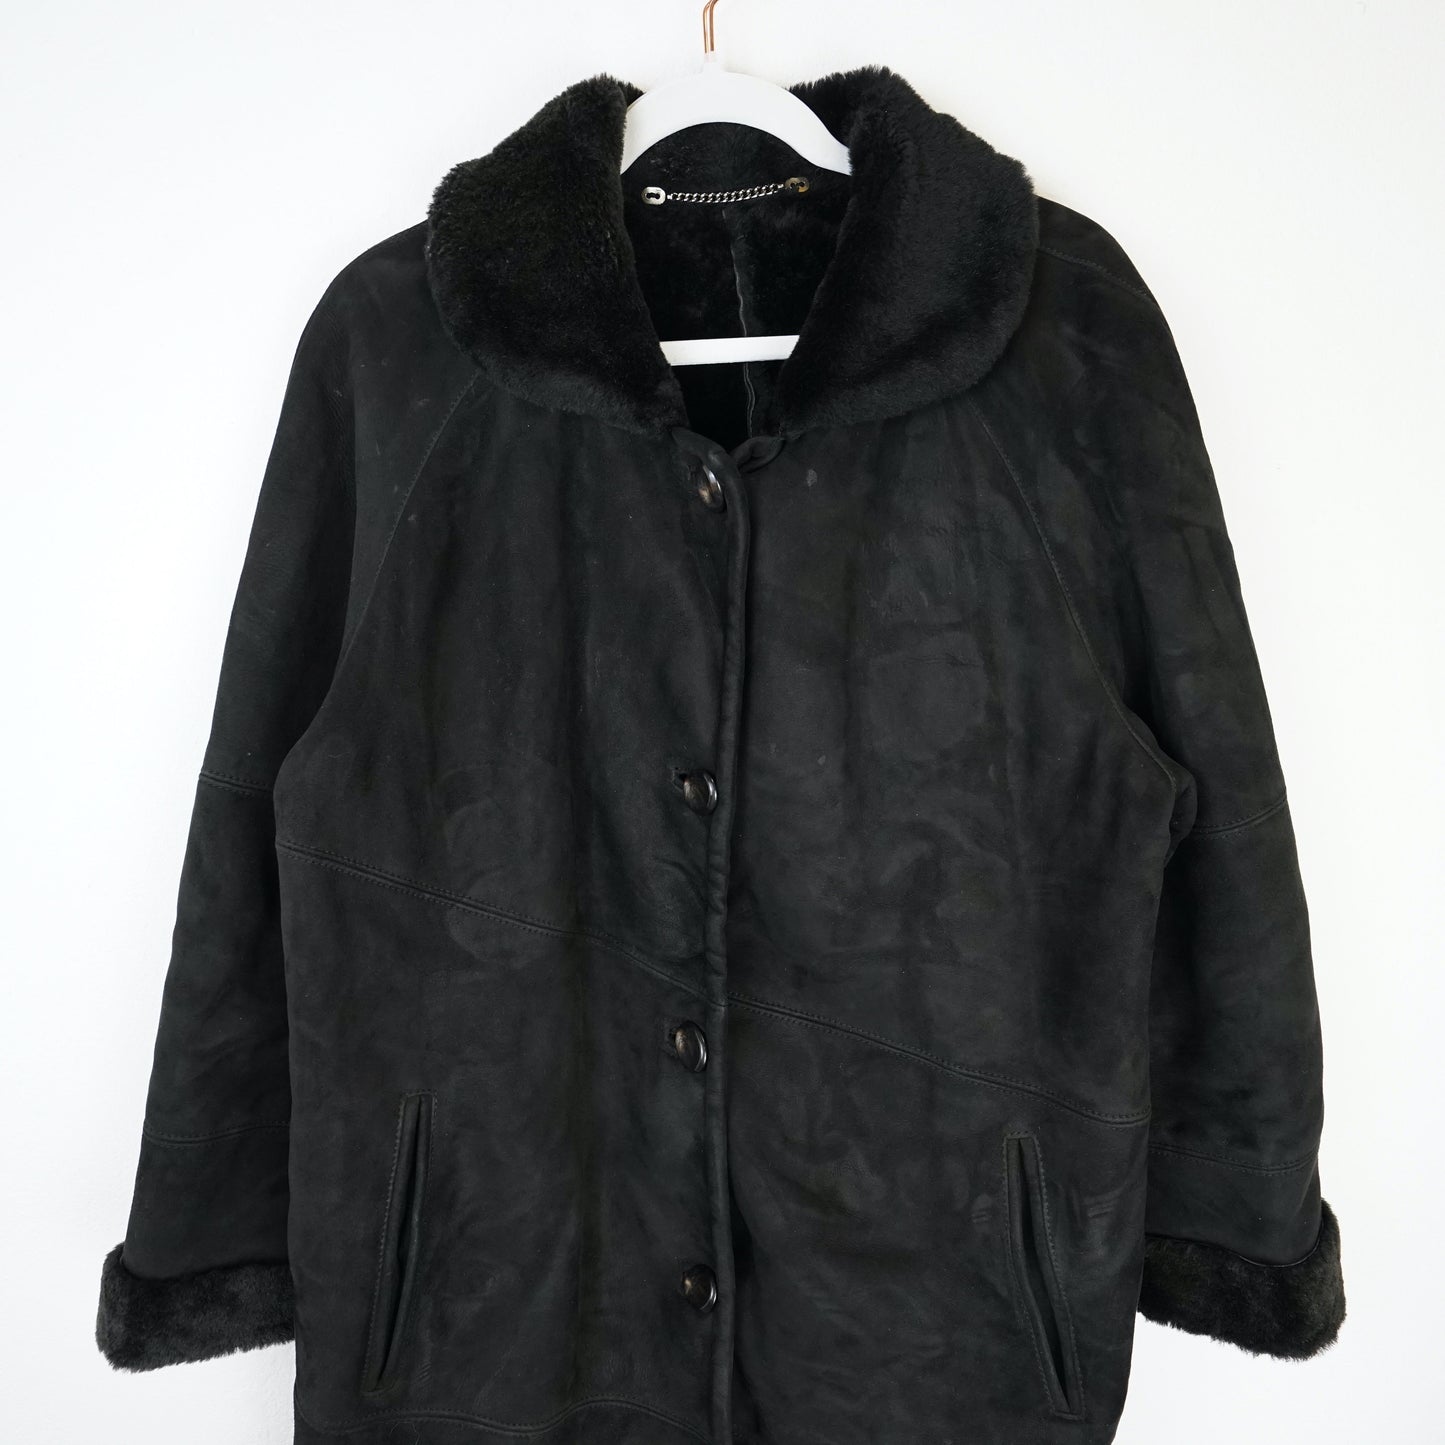 Vintage Shearling Jacket Size L black